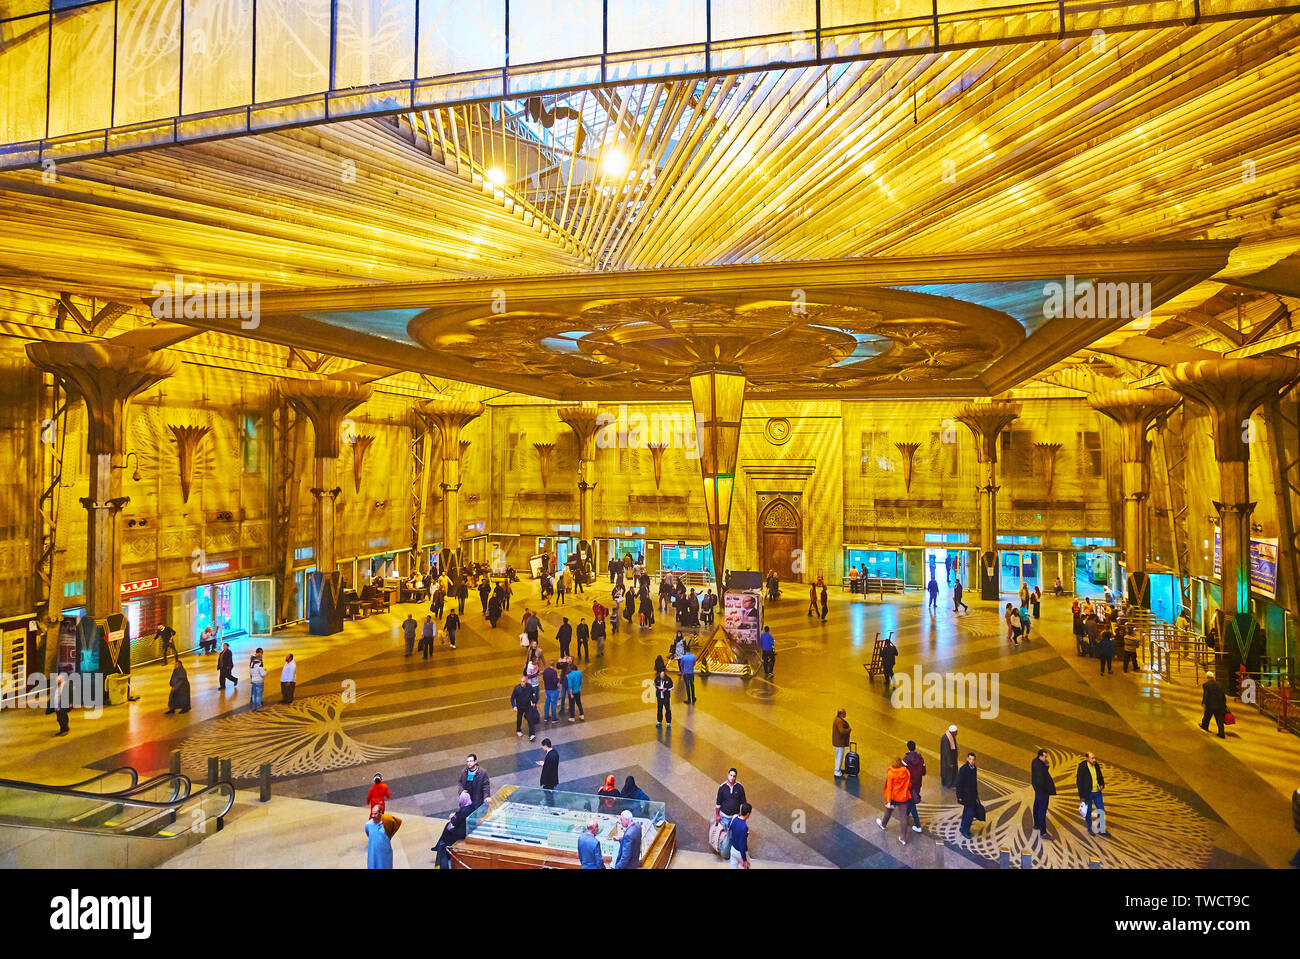 Kairo, Ägypten - Dezember 22, 2017: Die schöne Halle von Ramses (Misr) Bahnhof, mit inveted Pyramide dekoriert, von der Decke hängen und Colum Stockfoto